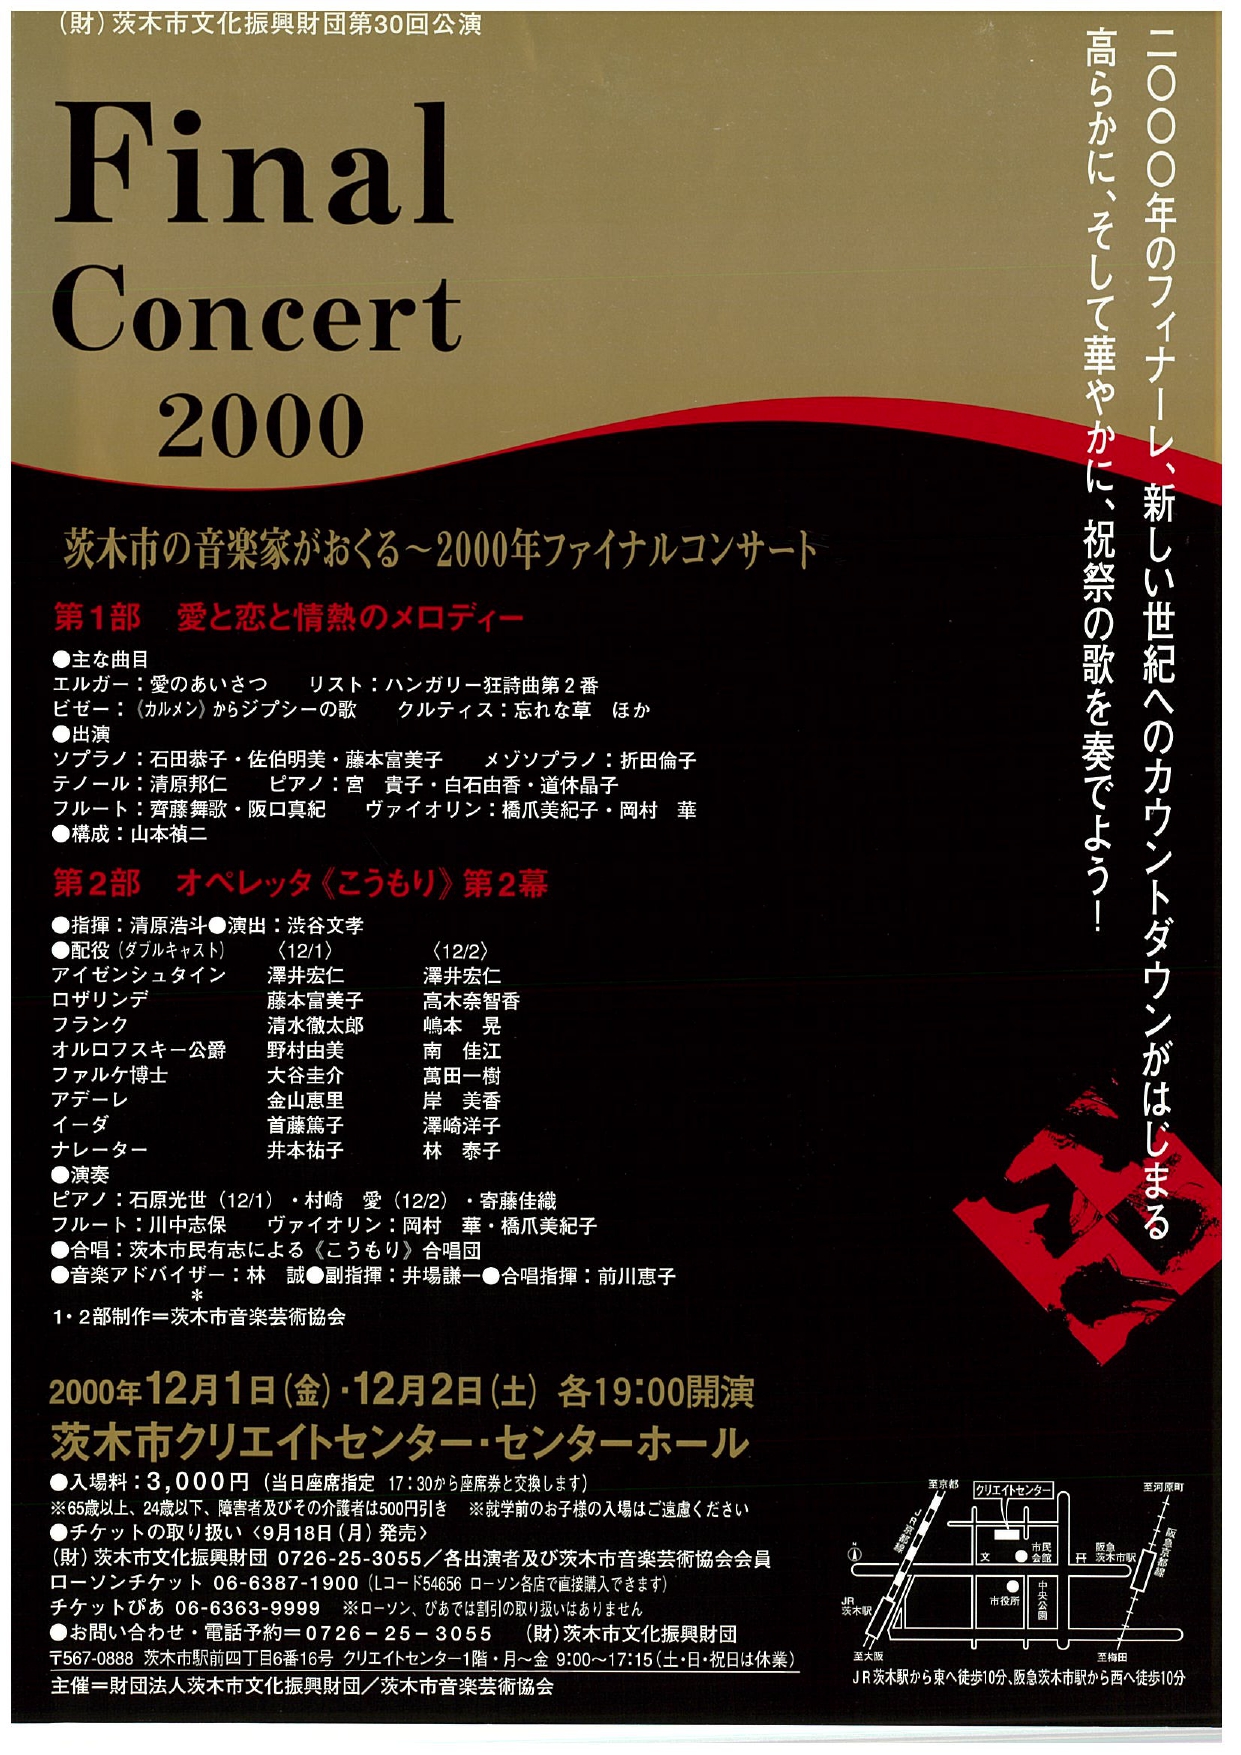 第4回音楽芸術協会コン サート　茨木市の音楽家が おくるファイナルコンサート 2000